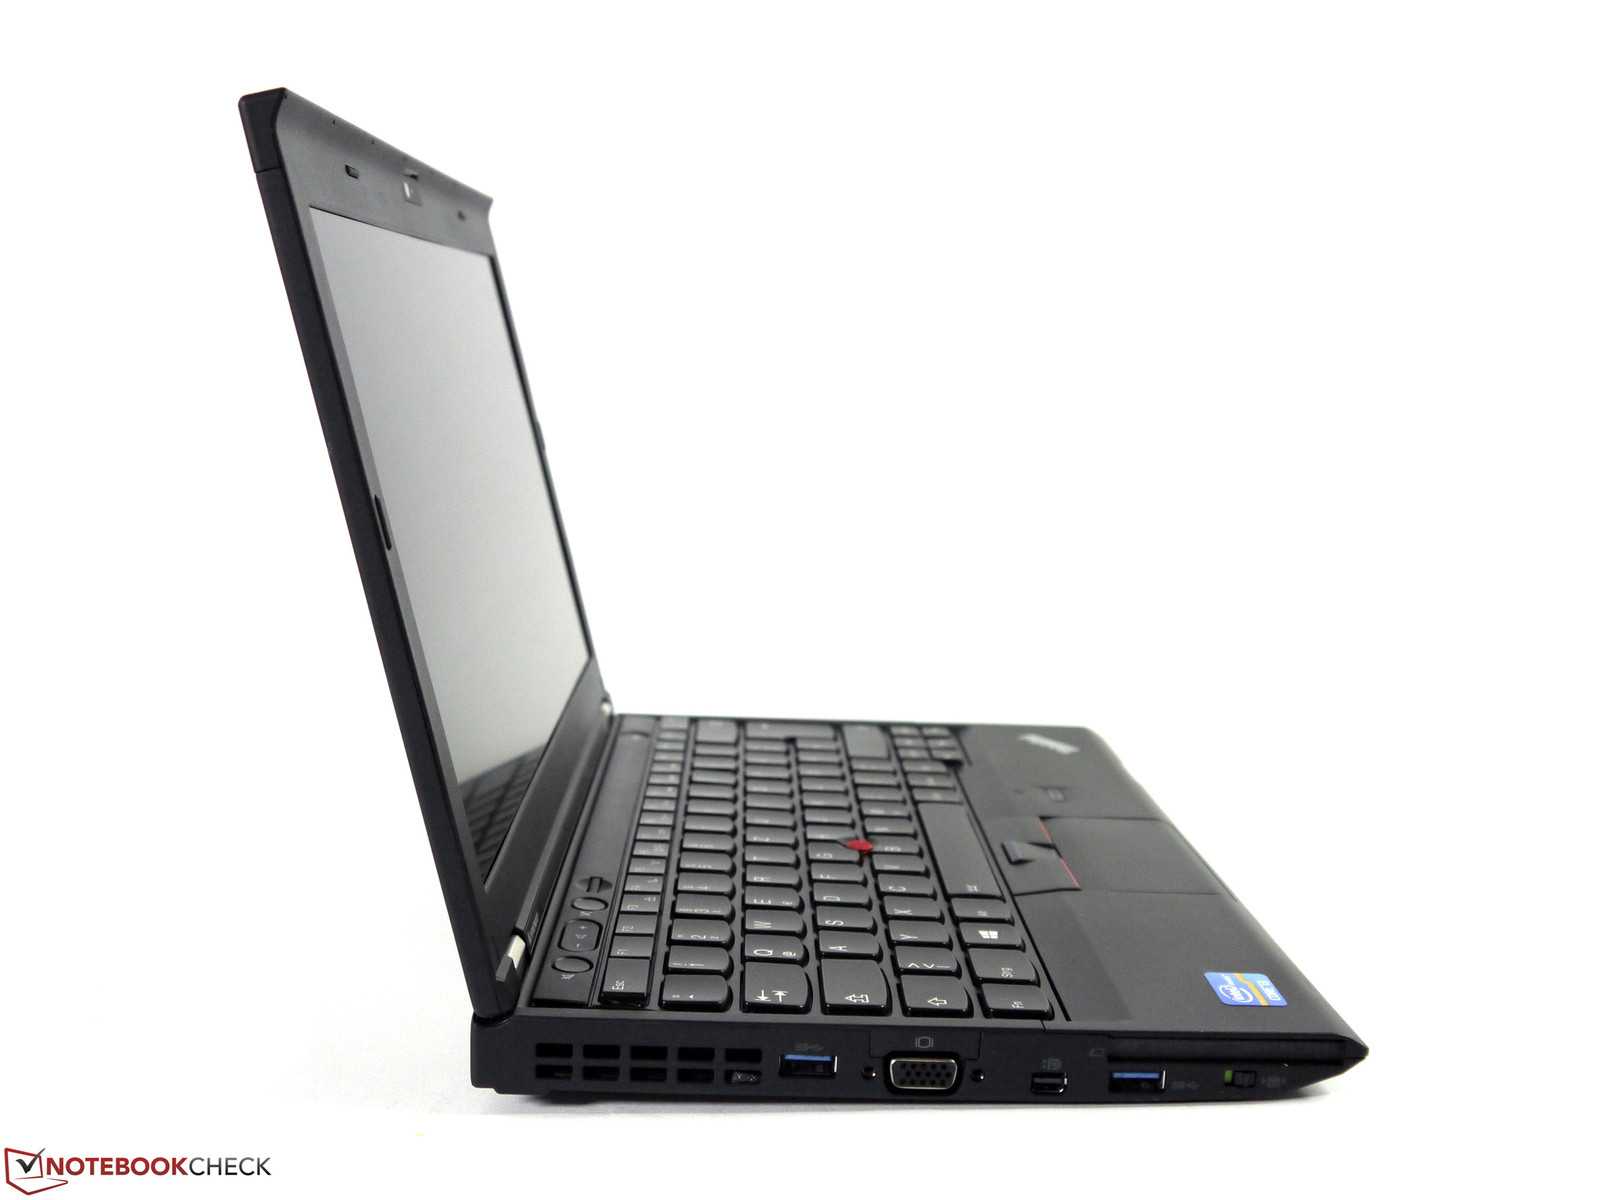 Lenovo thinkpad x230 купить по акционной цене , отзывы и обзоры.